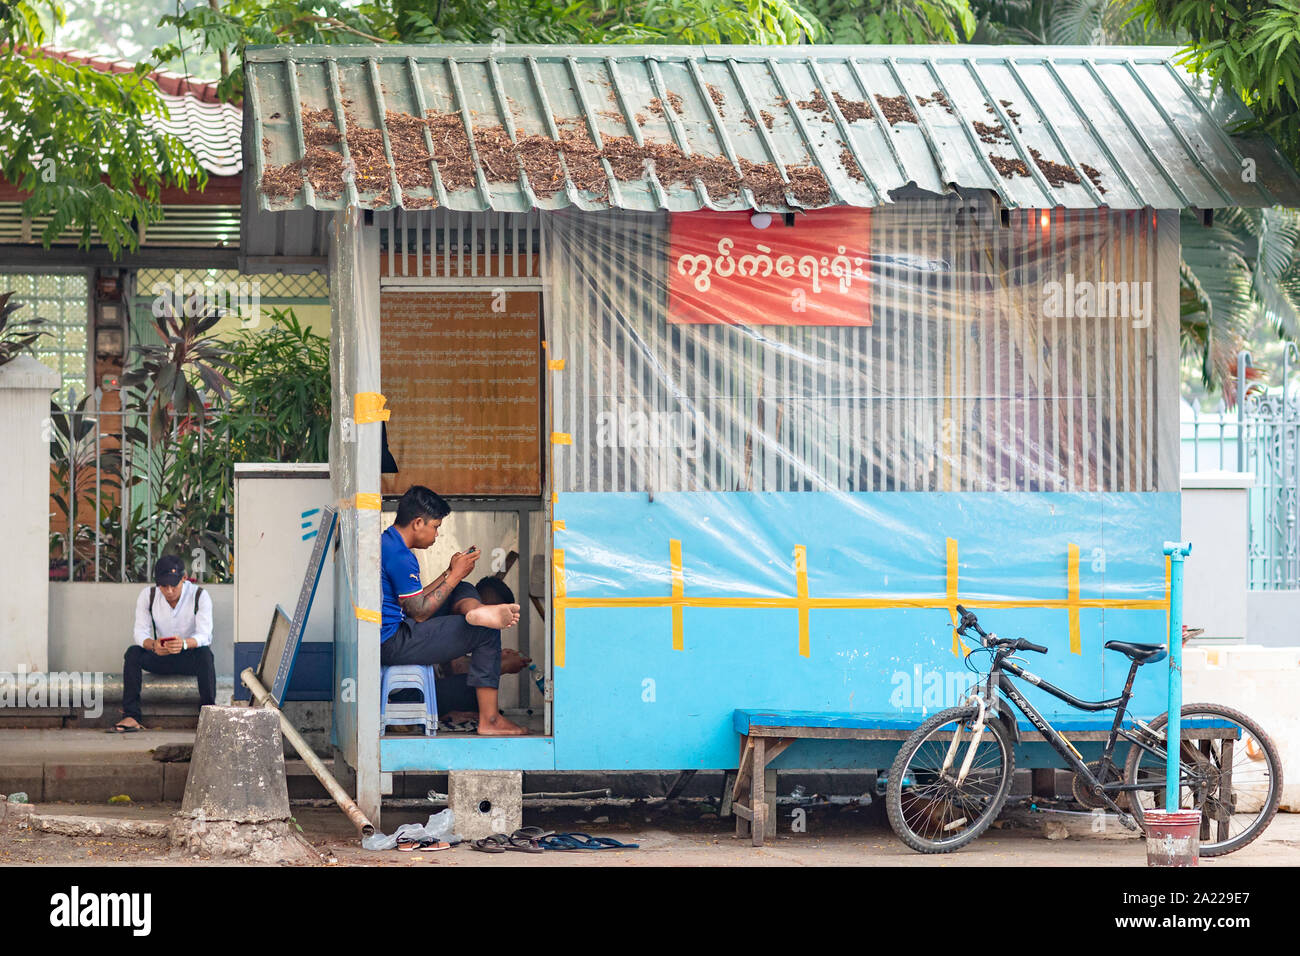 La gente en la calle de Yangon, usar el teléfono móvil celular. País pobre y el concepto de la tecnología moderna. La moderna tecnología de la comunicación en el tercer mundo. Foto de stock